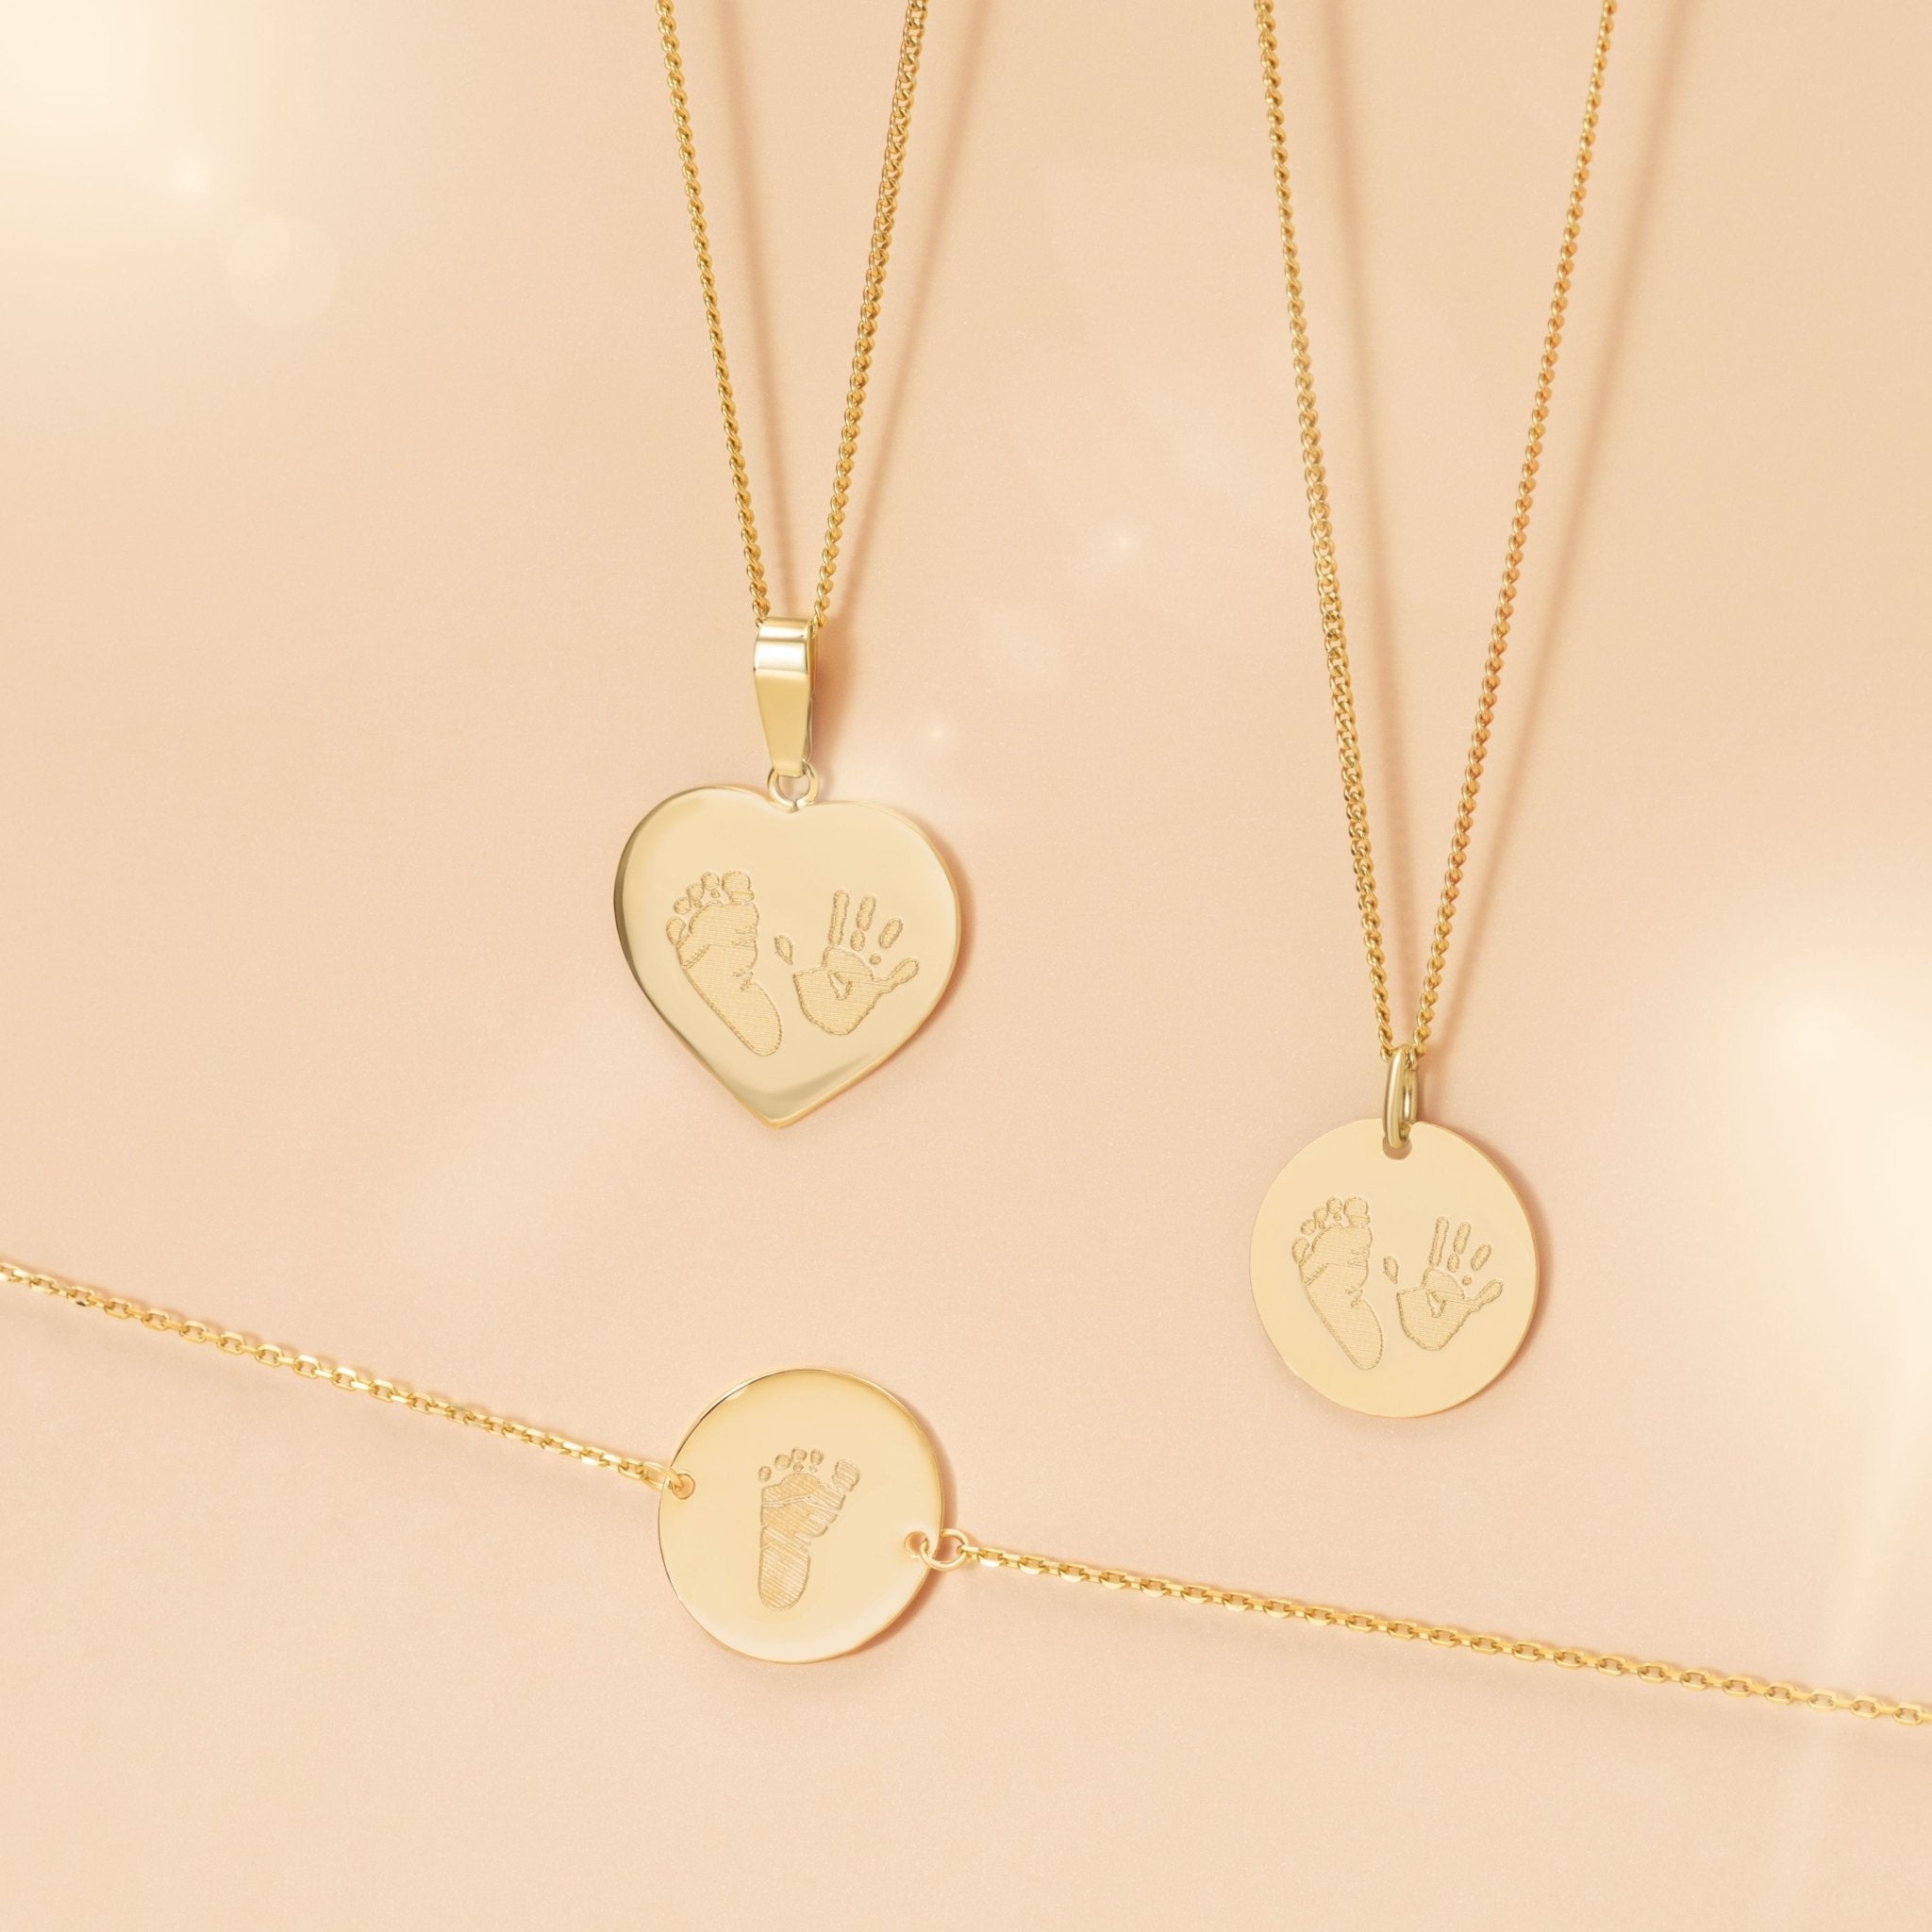 Personalisierte Herz-Halskette, Coin-Halskette und Coin-Armband mit Handdrücken und Fußabdrücken. Das ideale Geschenk zur Geburt oder zum Muttertag. Emma & Marie